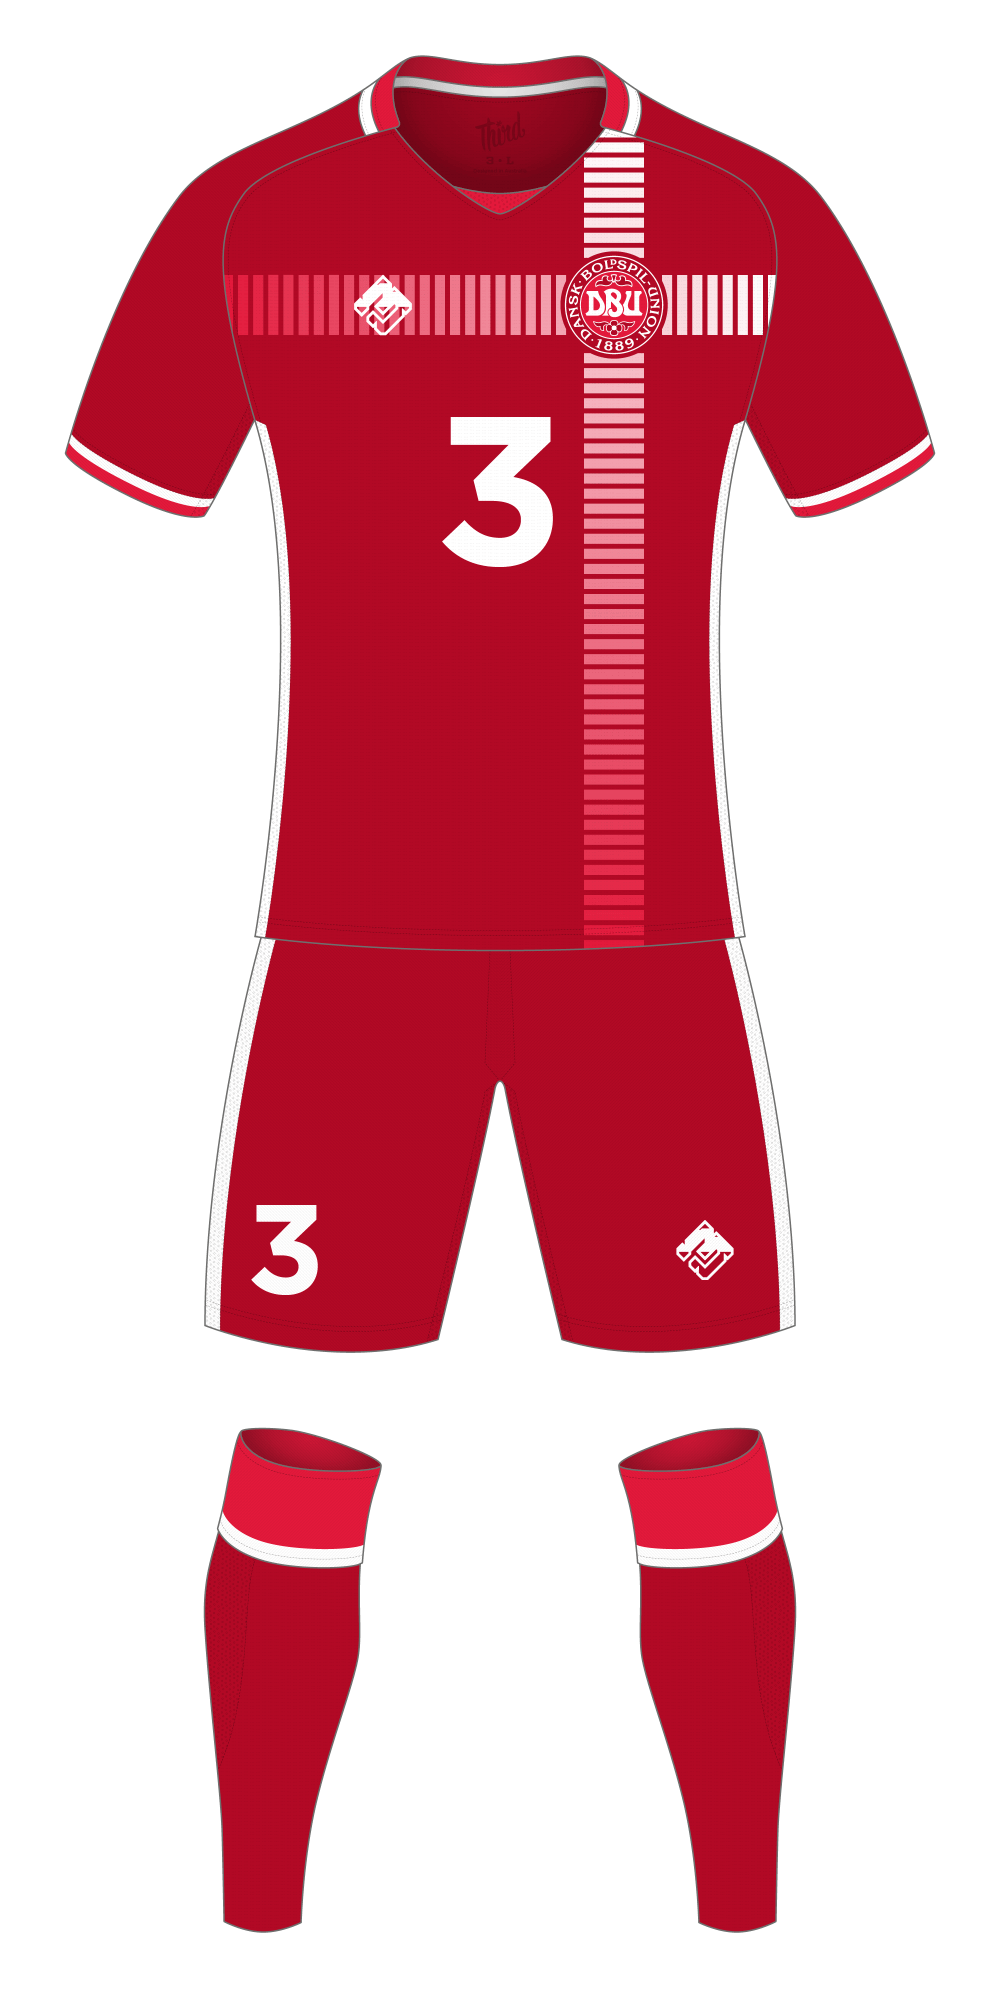 Denmark World Cup 2018 concept